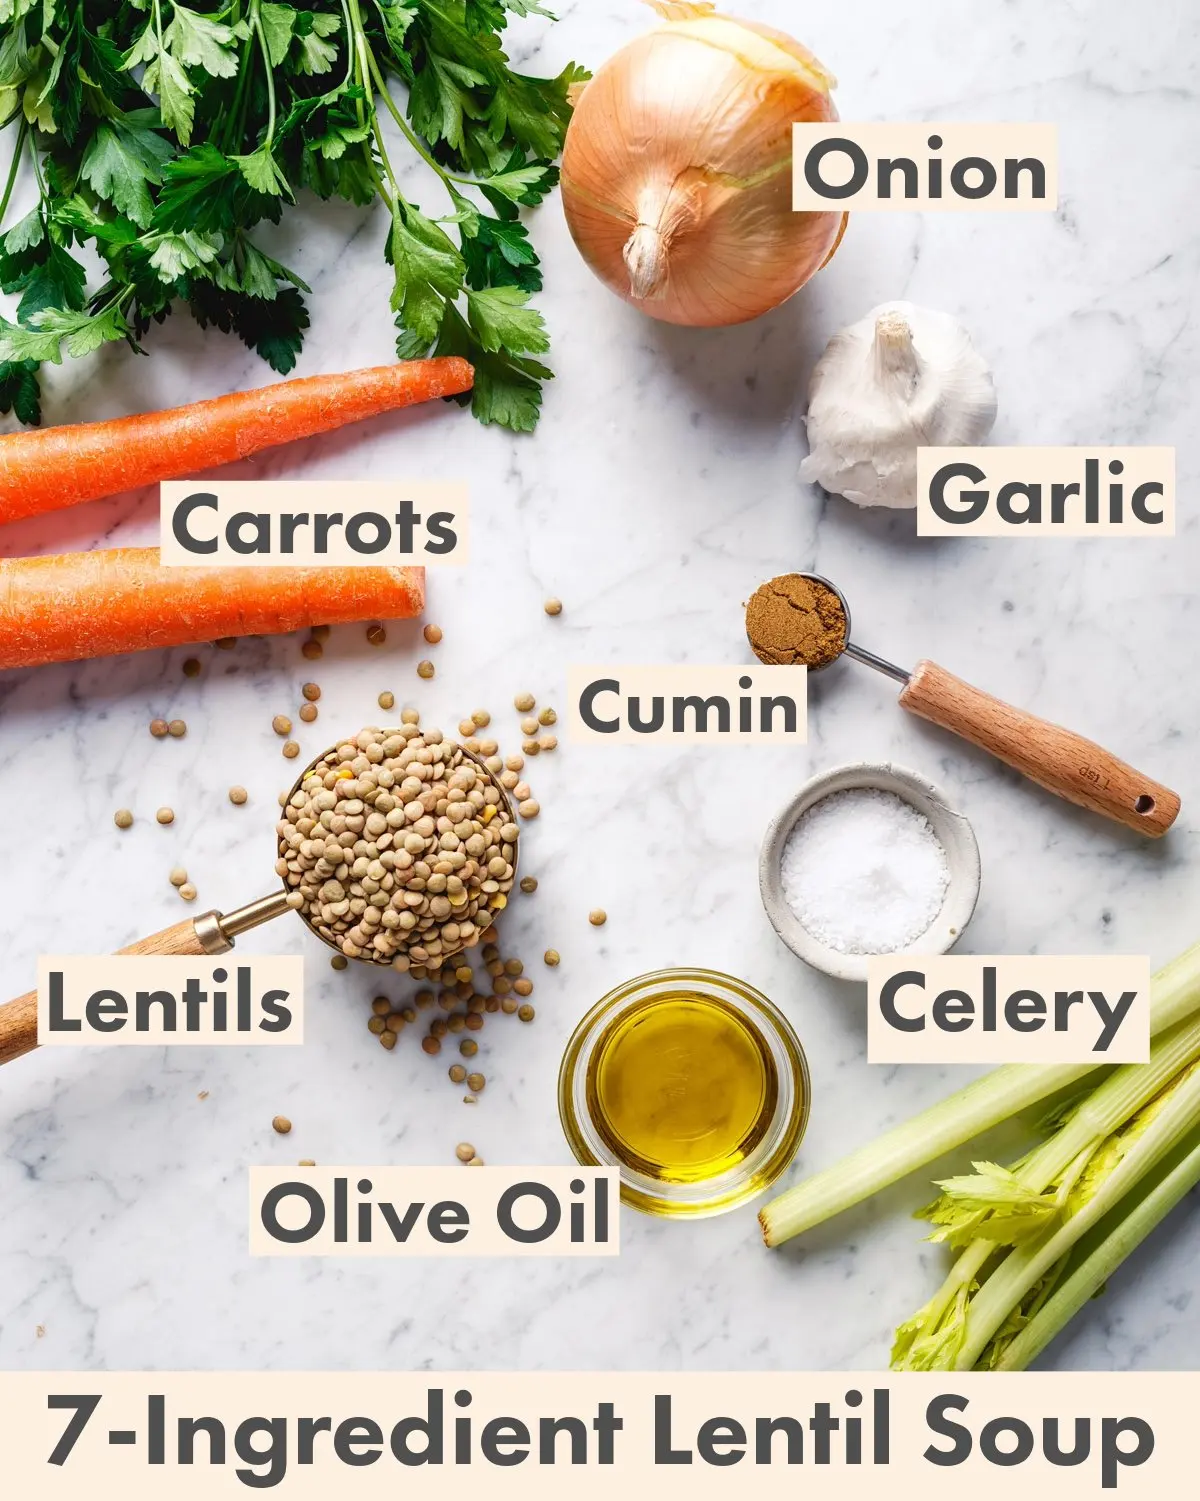 Ingredients for lentil soup